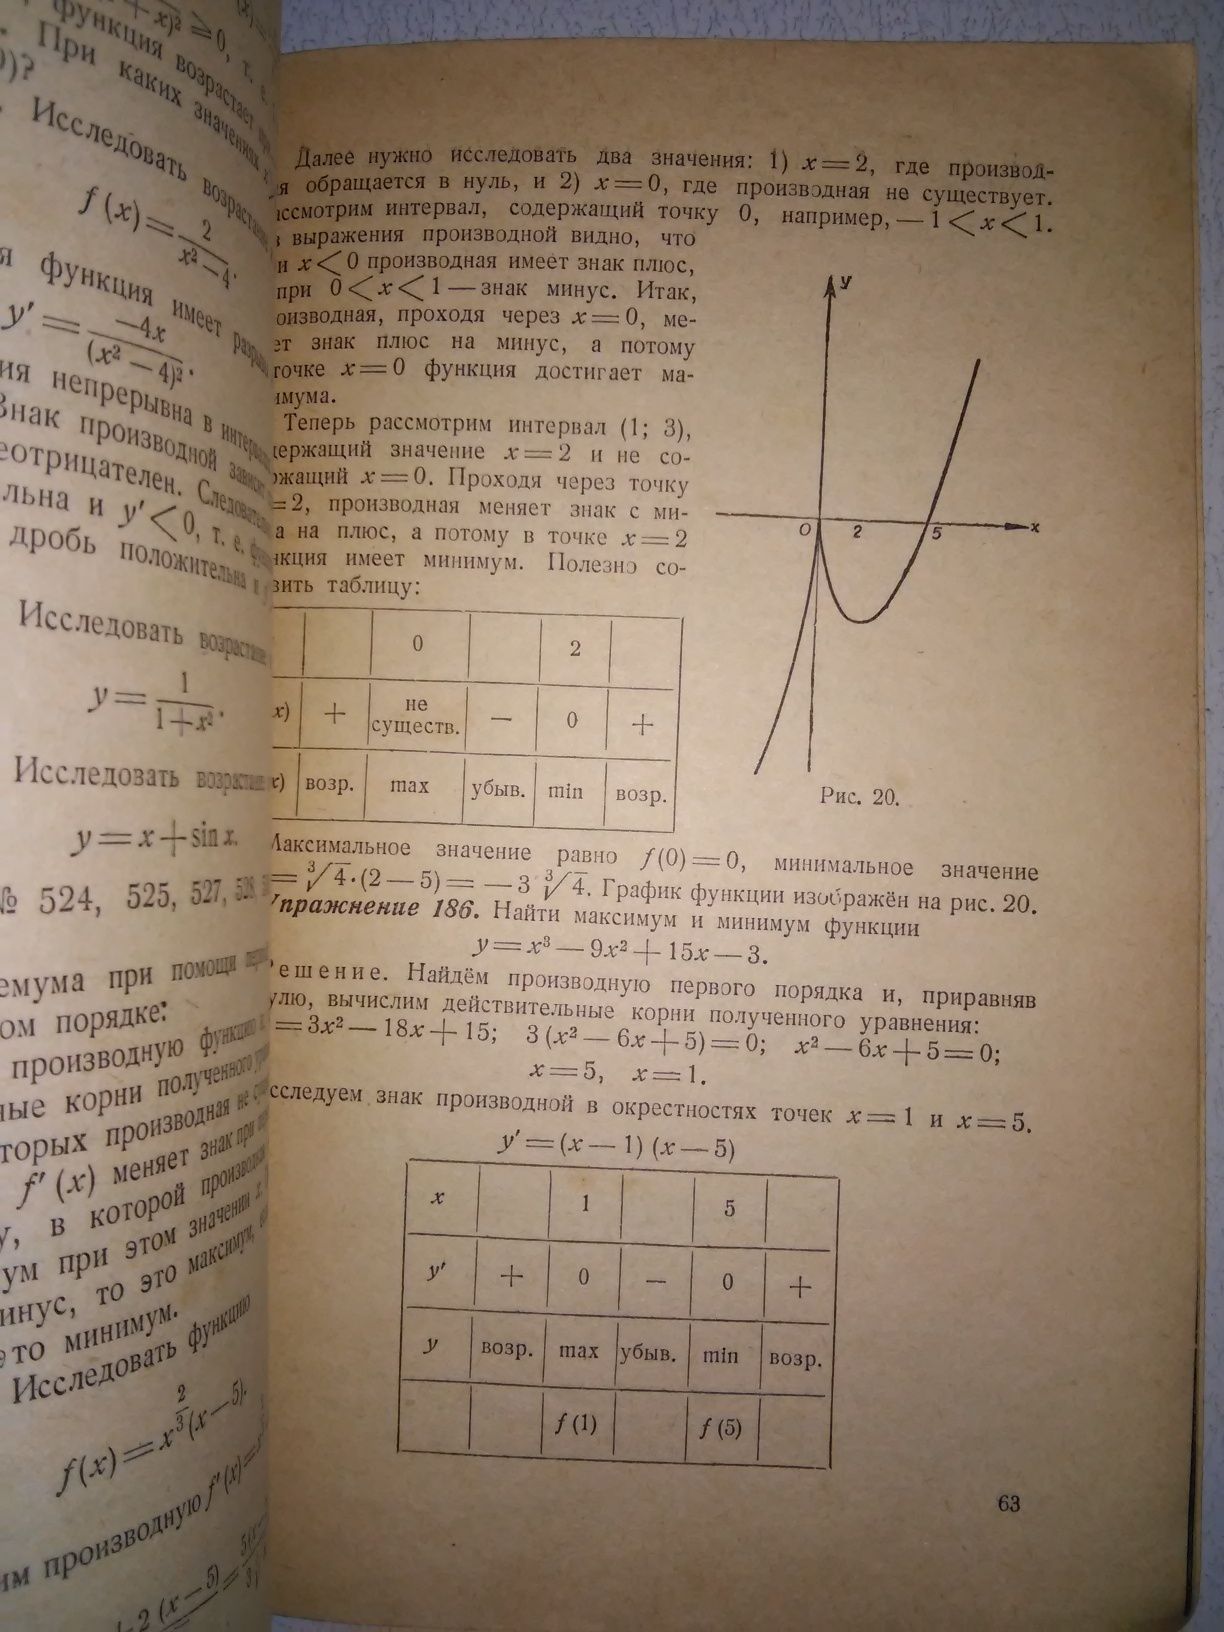 Погорелов Сборник задач по высшей математике 1949 р.